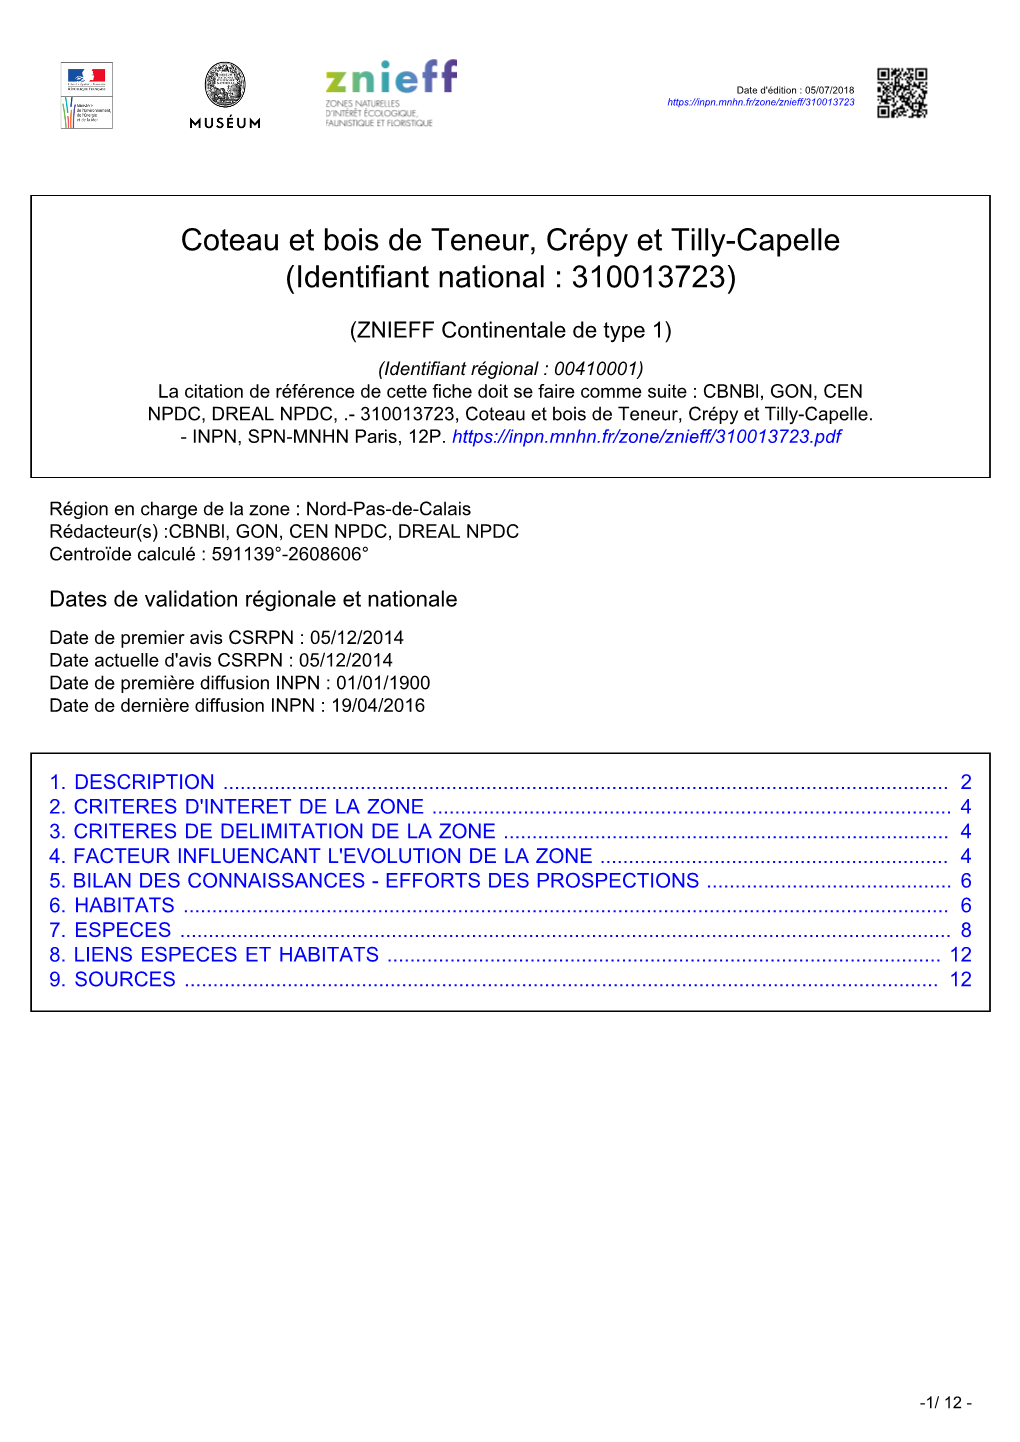 Coteau Et Bois De Teneur, Crépy Et Tilly-Capelle (Identifiant National : 310013723)